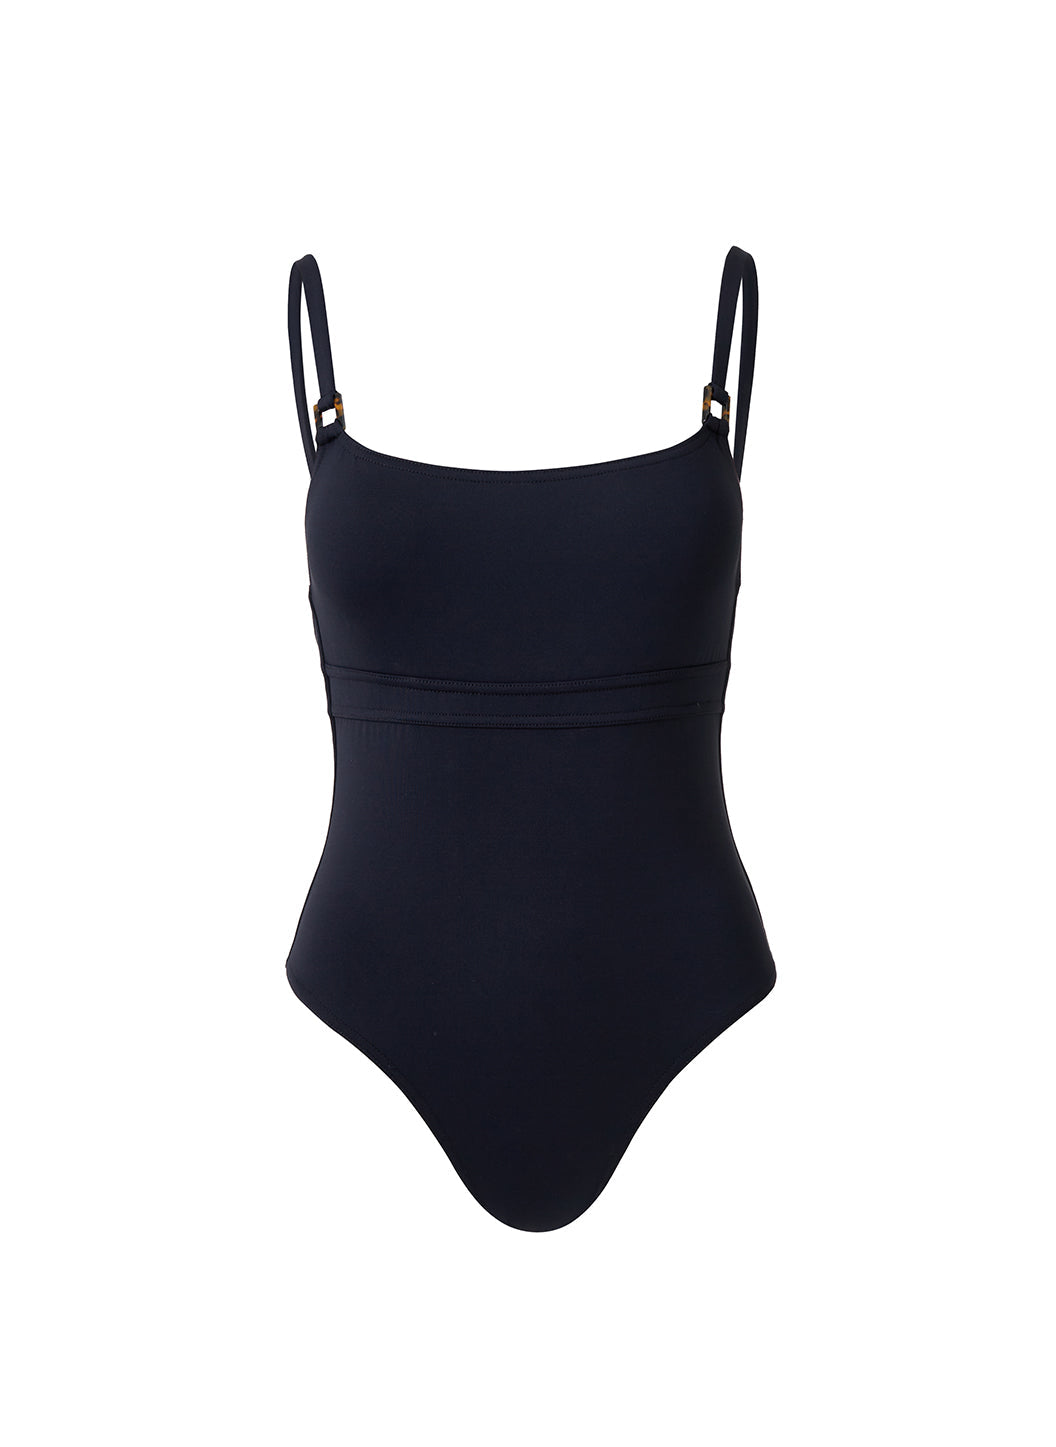 st-lucia-black-swimsuit_cutout